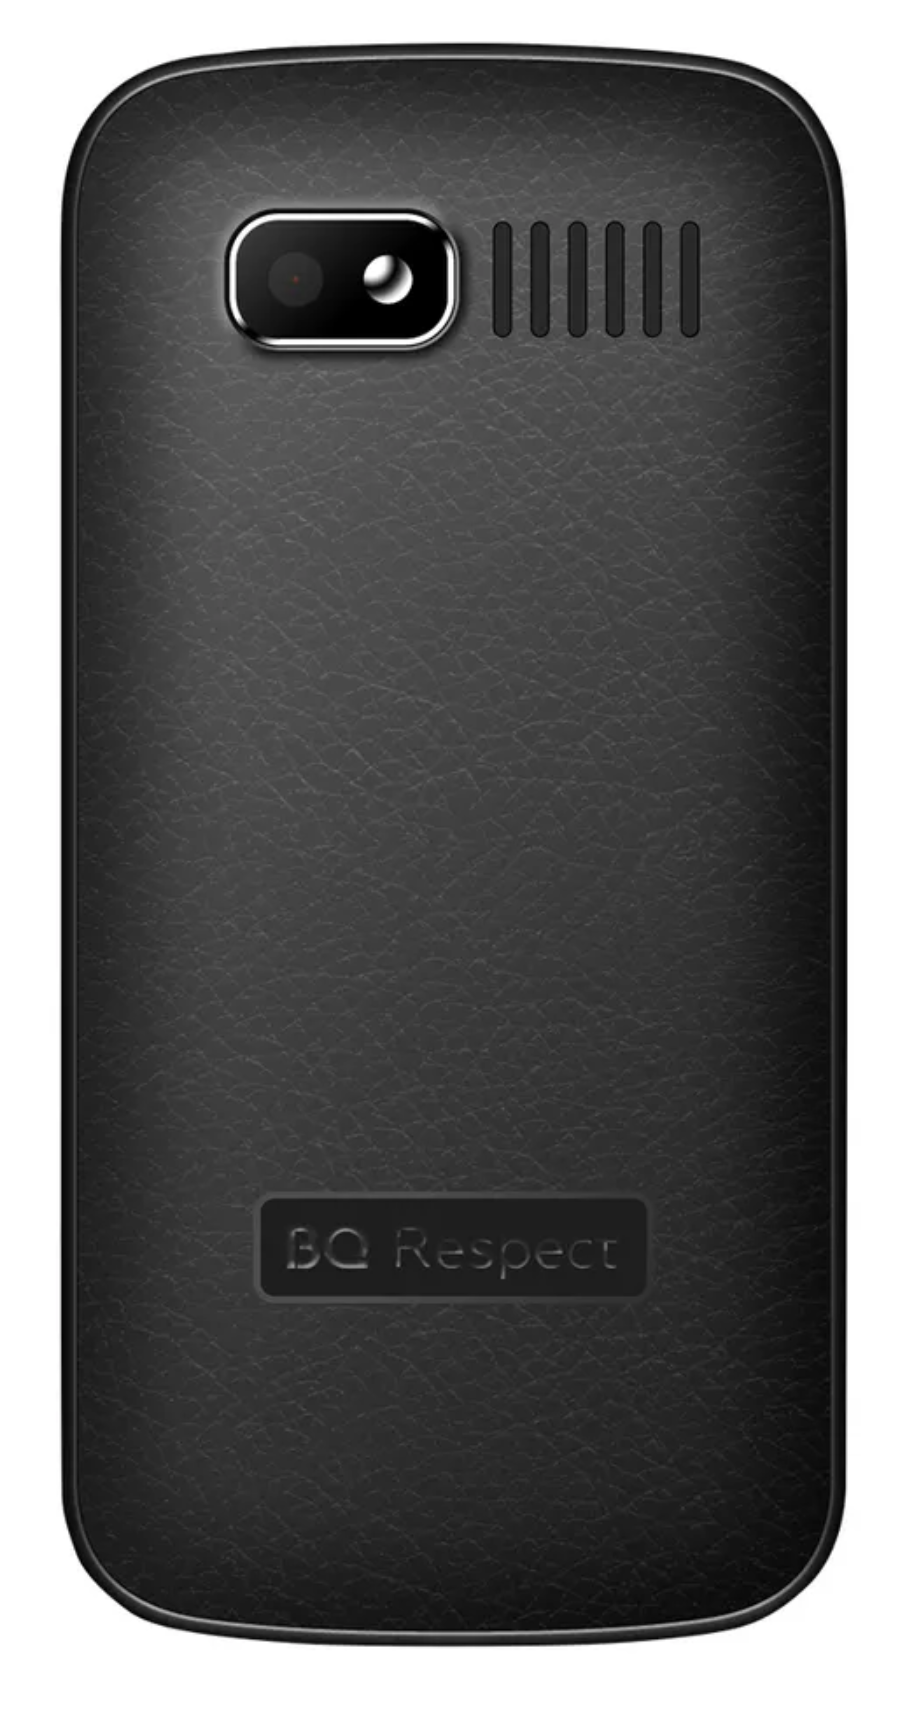 Мобильный телефон BQ Respect 1851, красный - фото №4